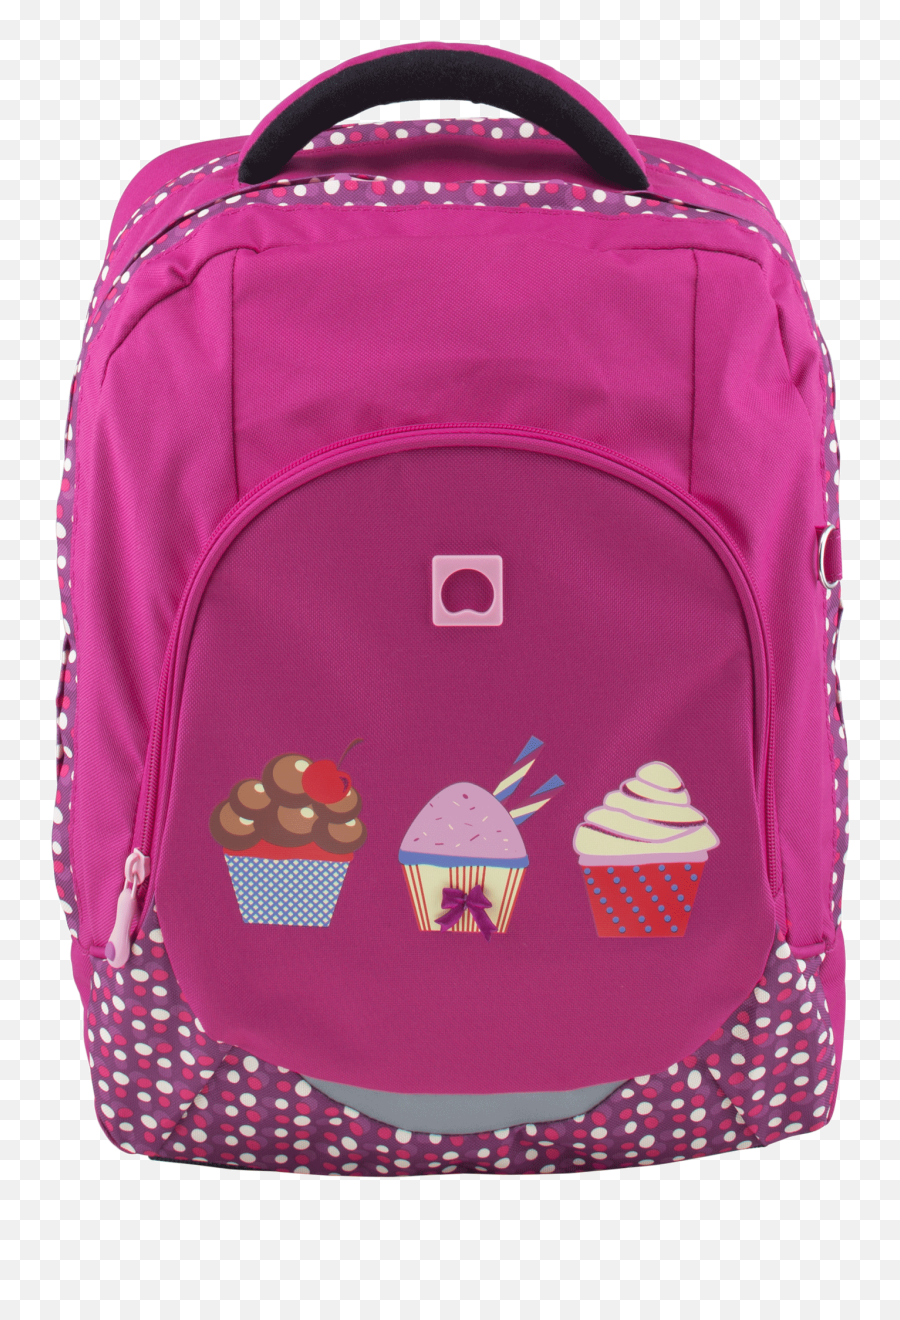 Kids School Backpack - Delsey Backpack Kids Emoji,Emoji Backpacks For School